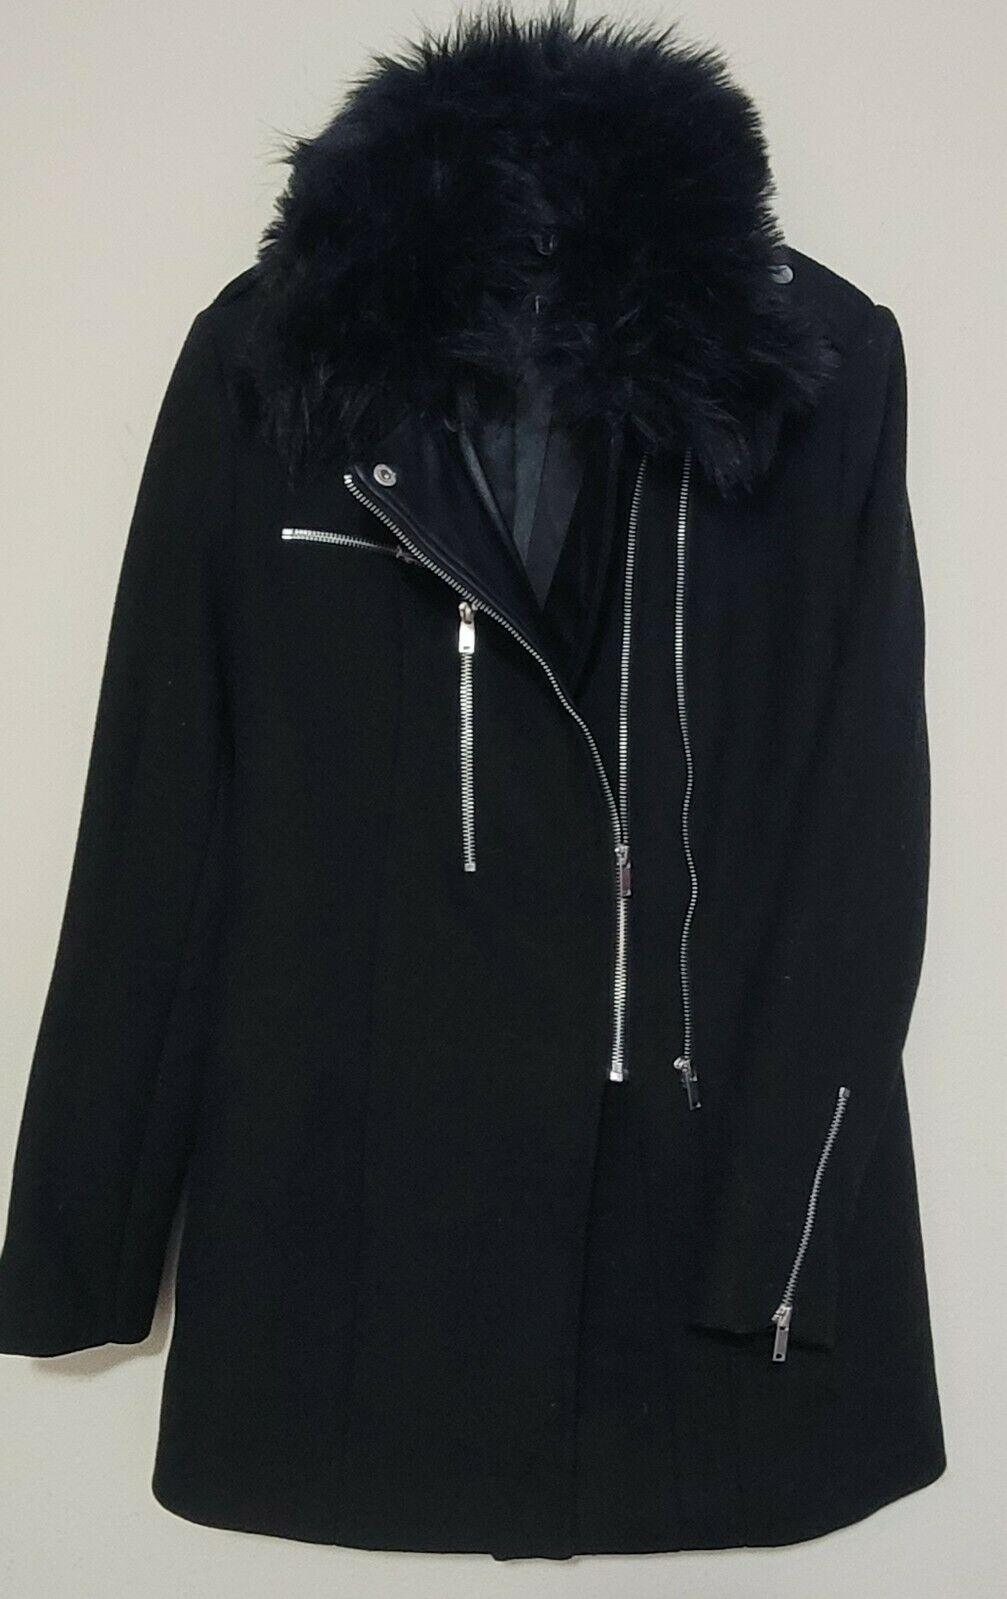 DEX Women's Black Asymmetrical-zip Wool Coat Detachable Faux Fur Collar Size S - SVNYFancy